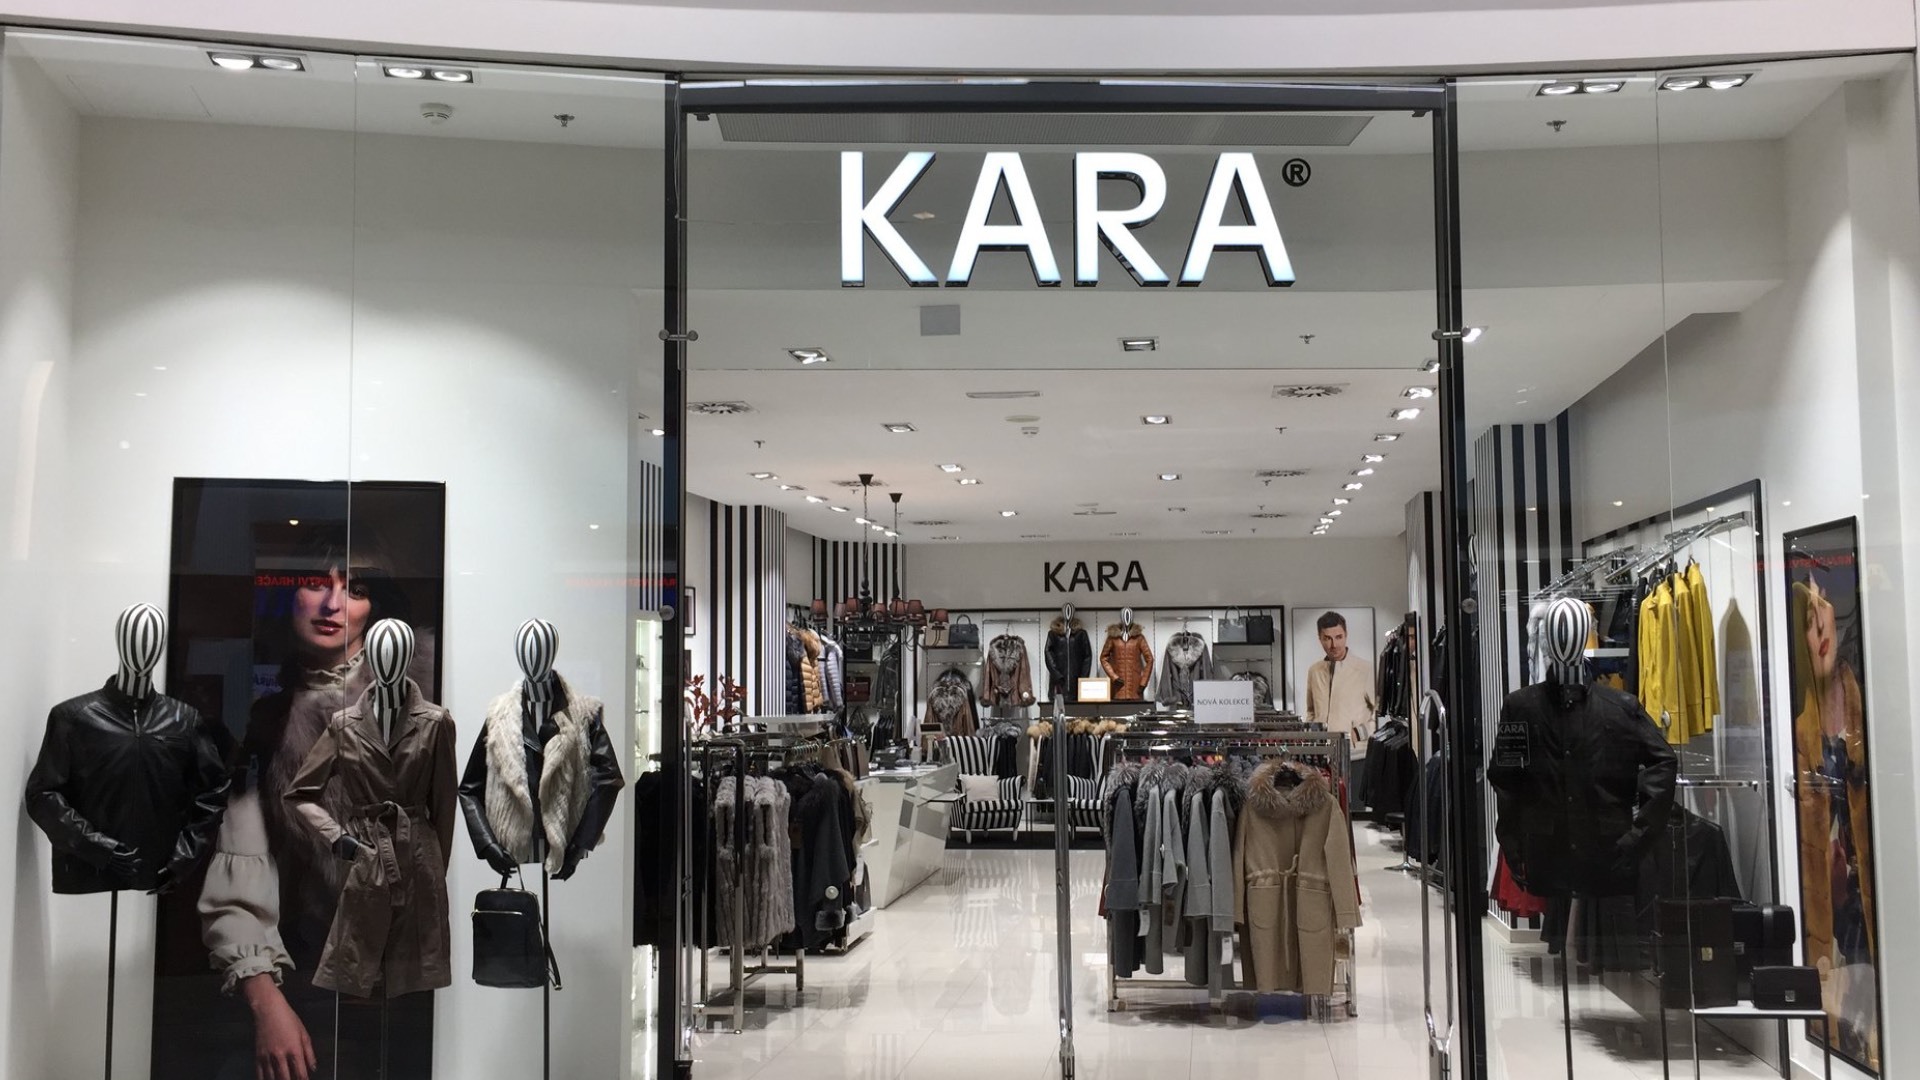 La marque traditionnelle Kara prend vie, les ventes diminuent de moitié, les bénéfices diminuent